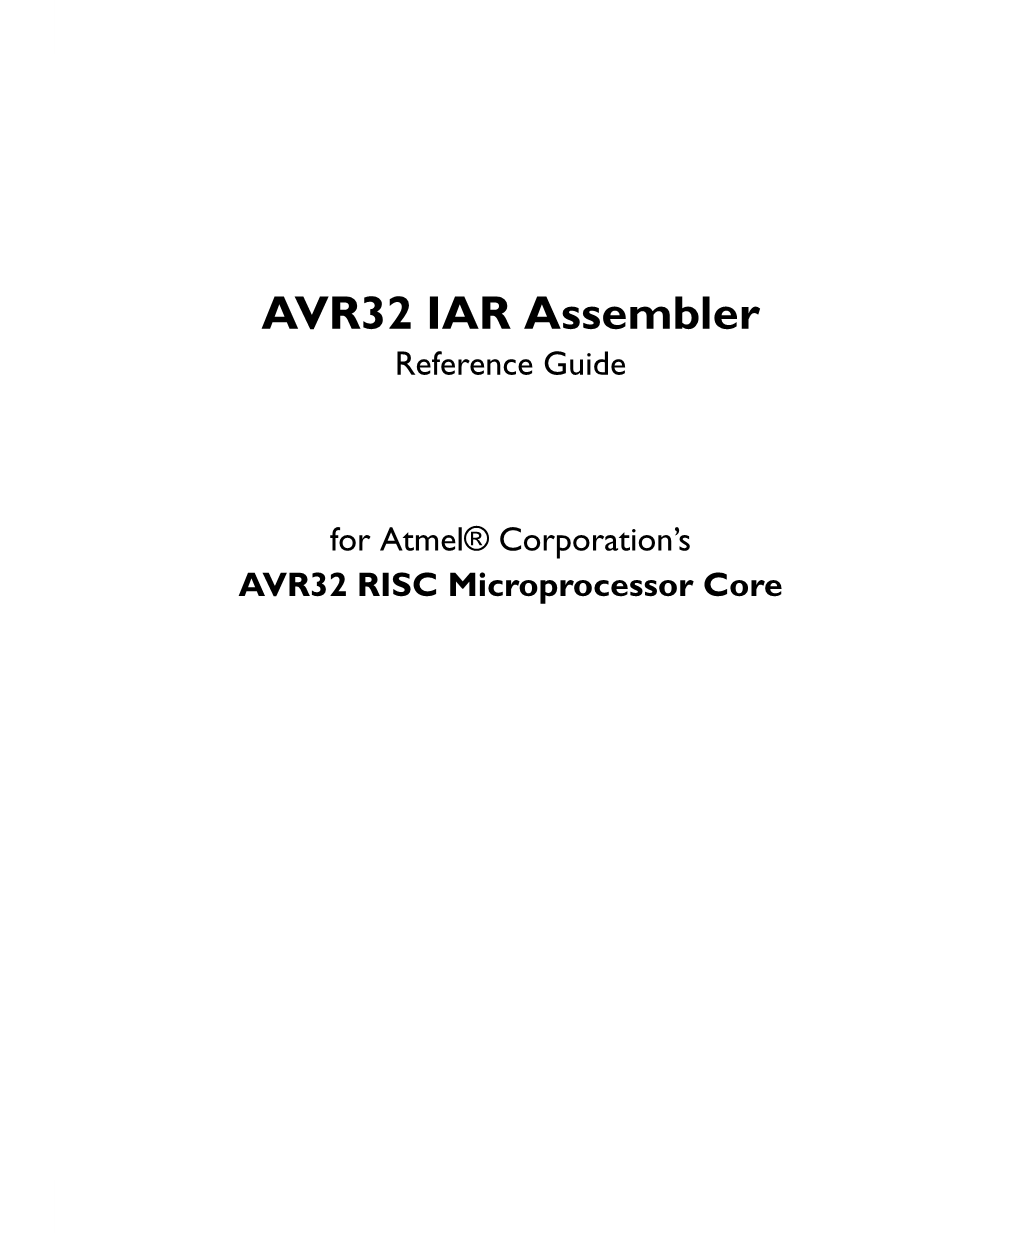 AVR32 IAR Assembler Reference Guide